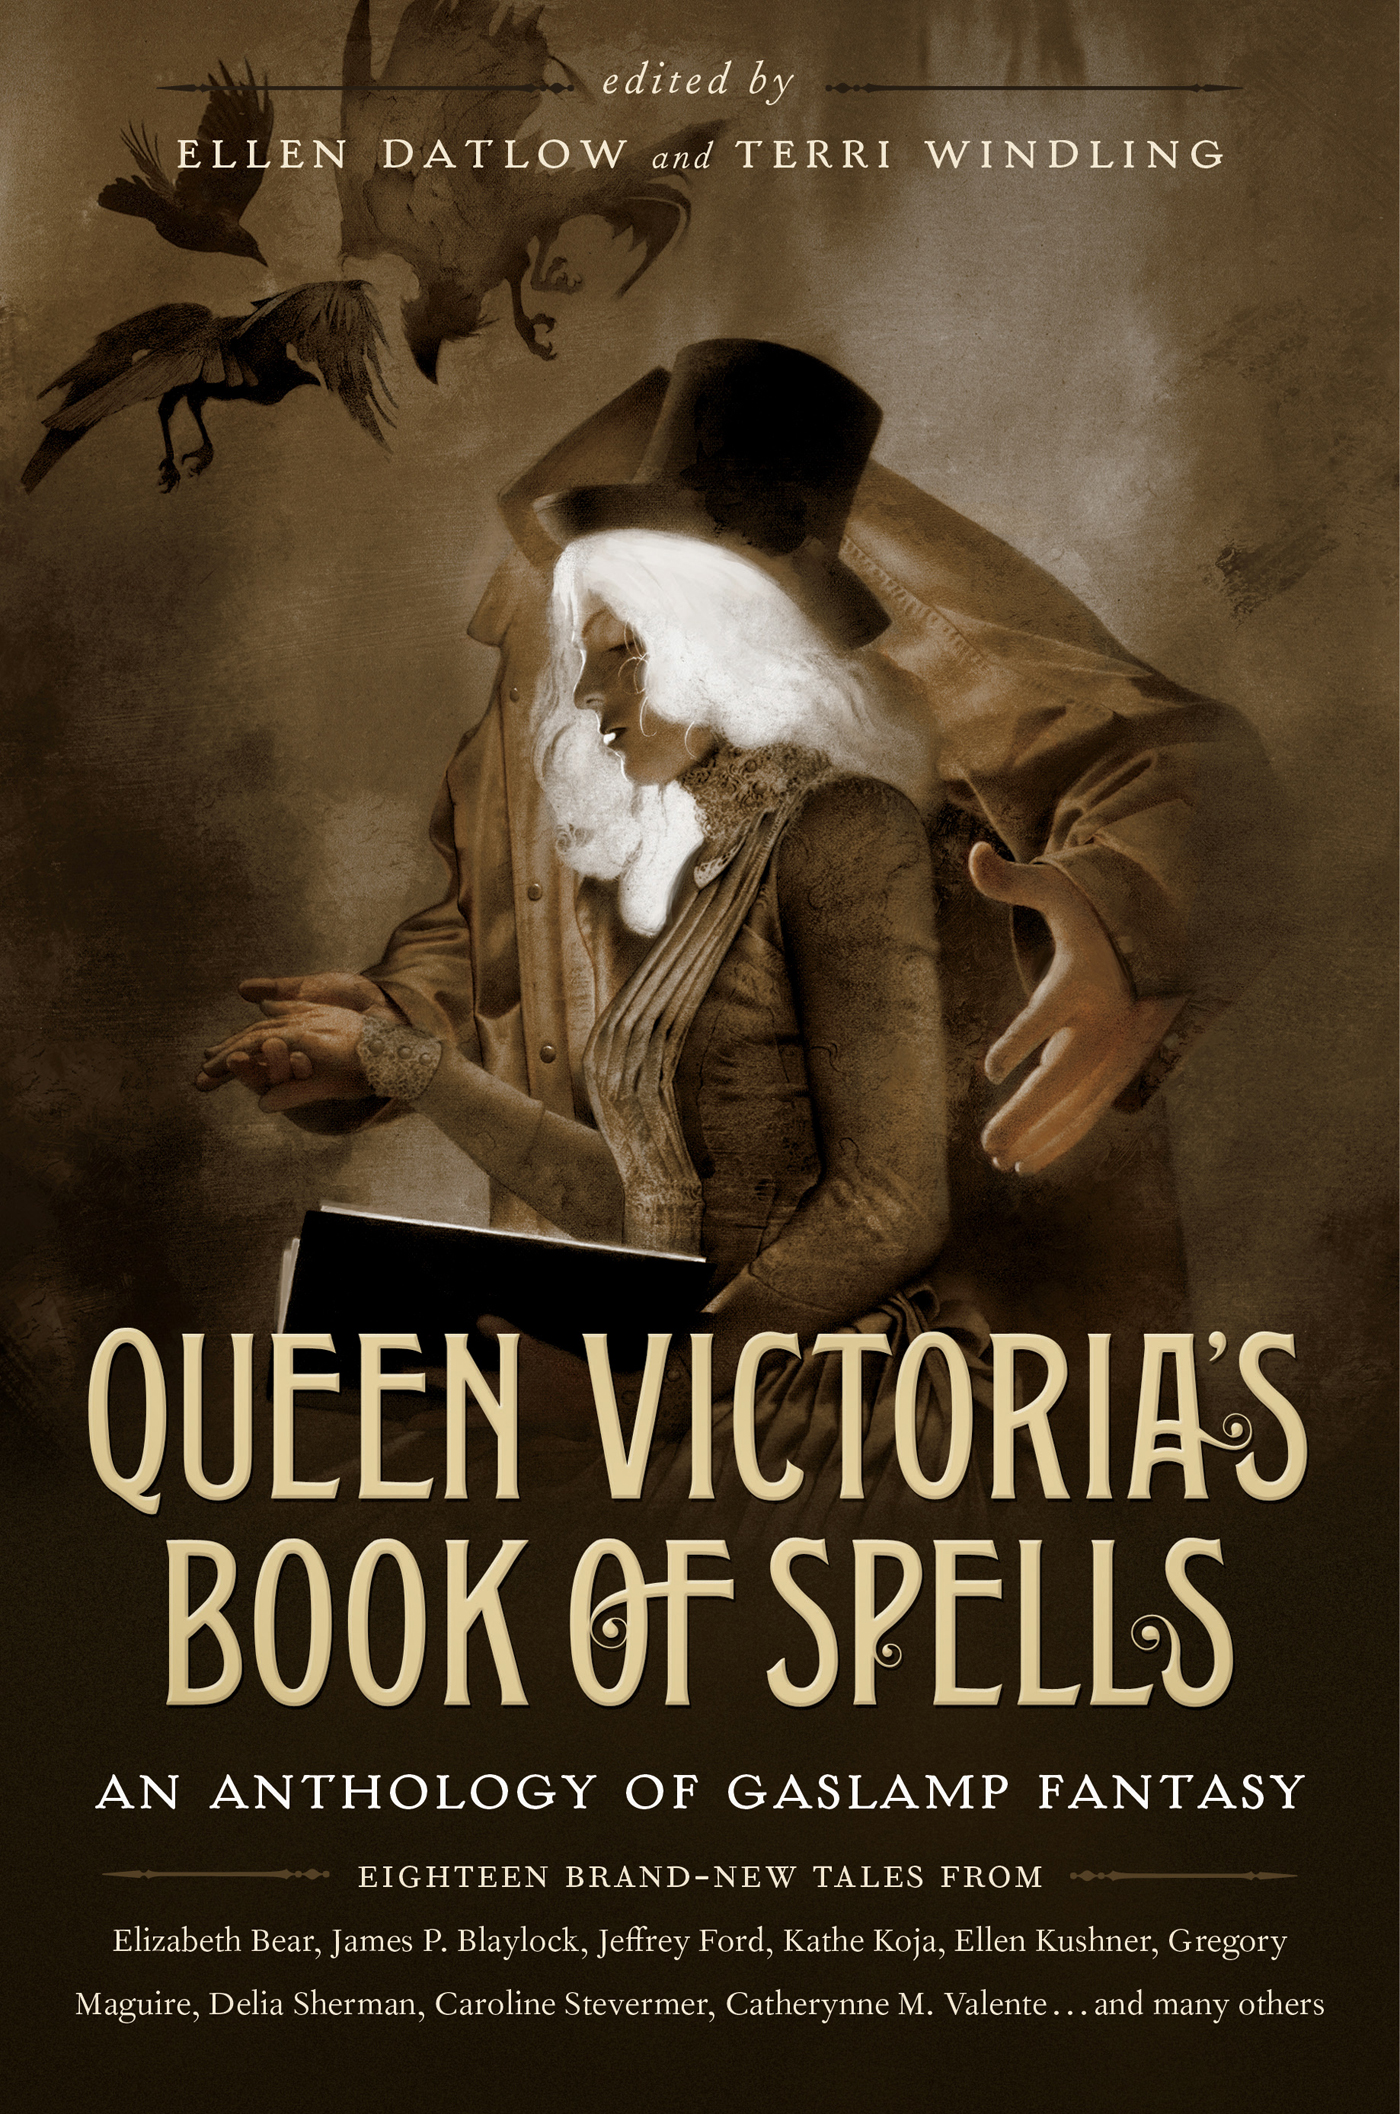 Queen Victoria's Book of Spells : An Anthology of Gaslamp Fantasy by Ellen Datlow, Terri Windling